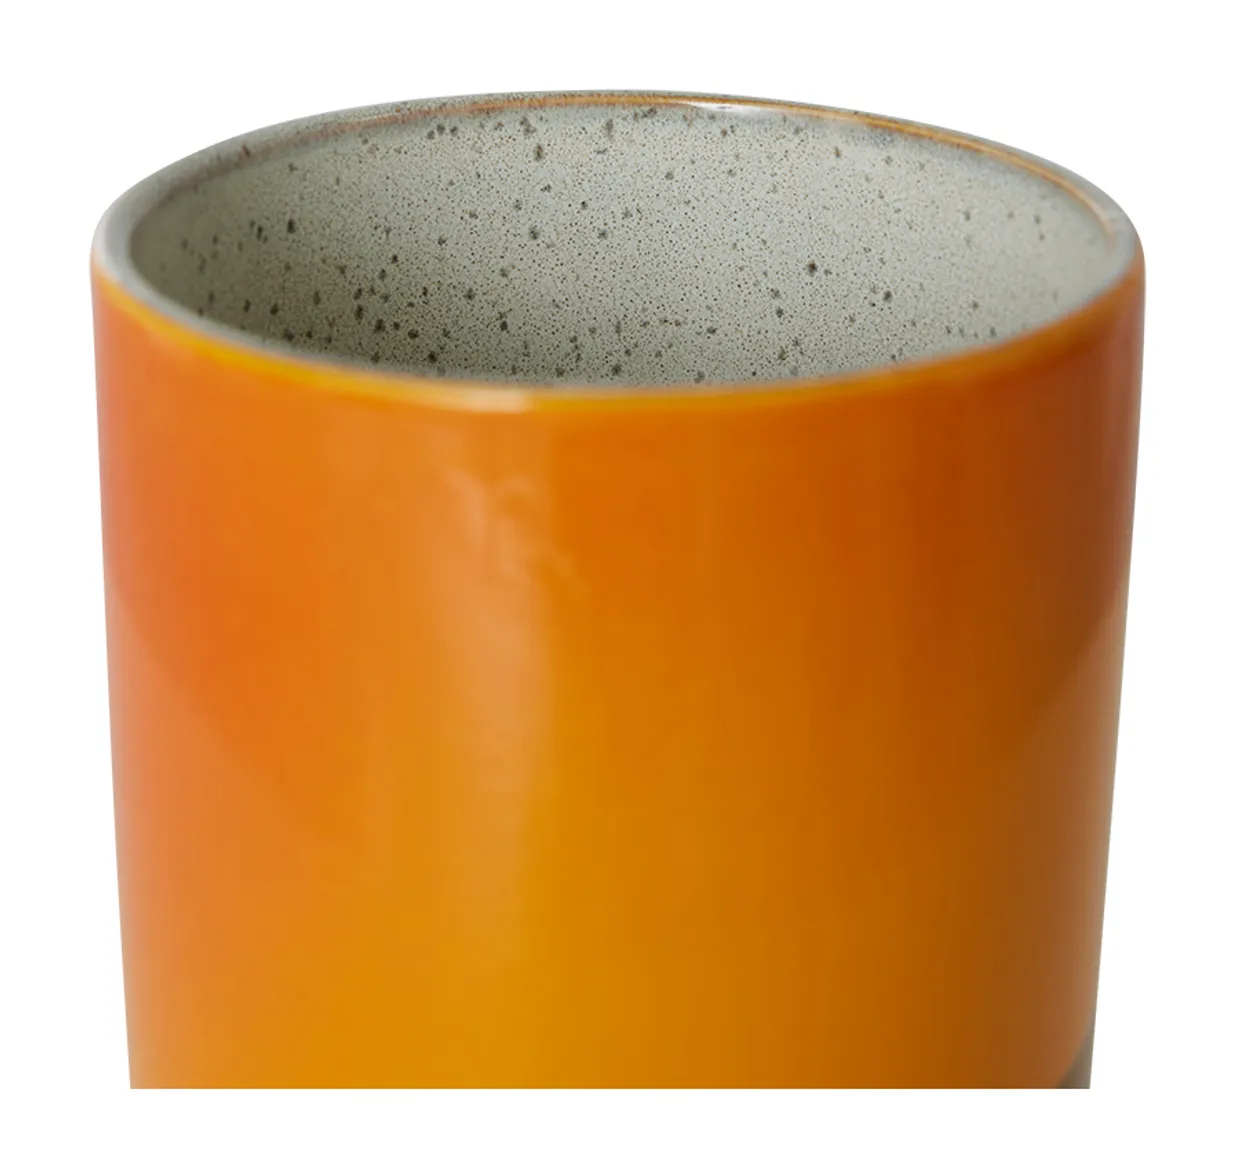 70s ceramics: storage jar, sunshine